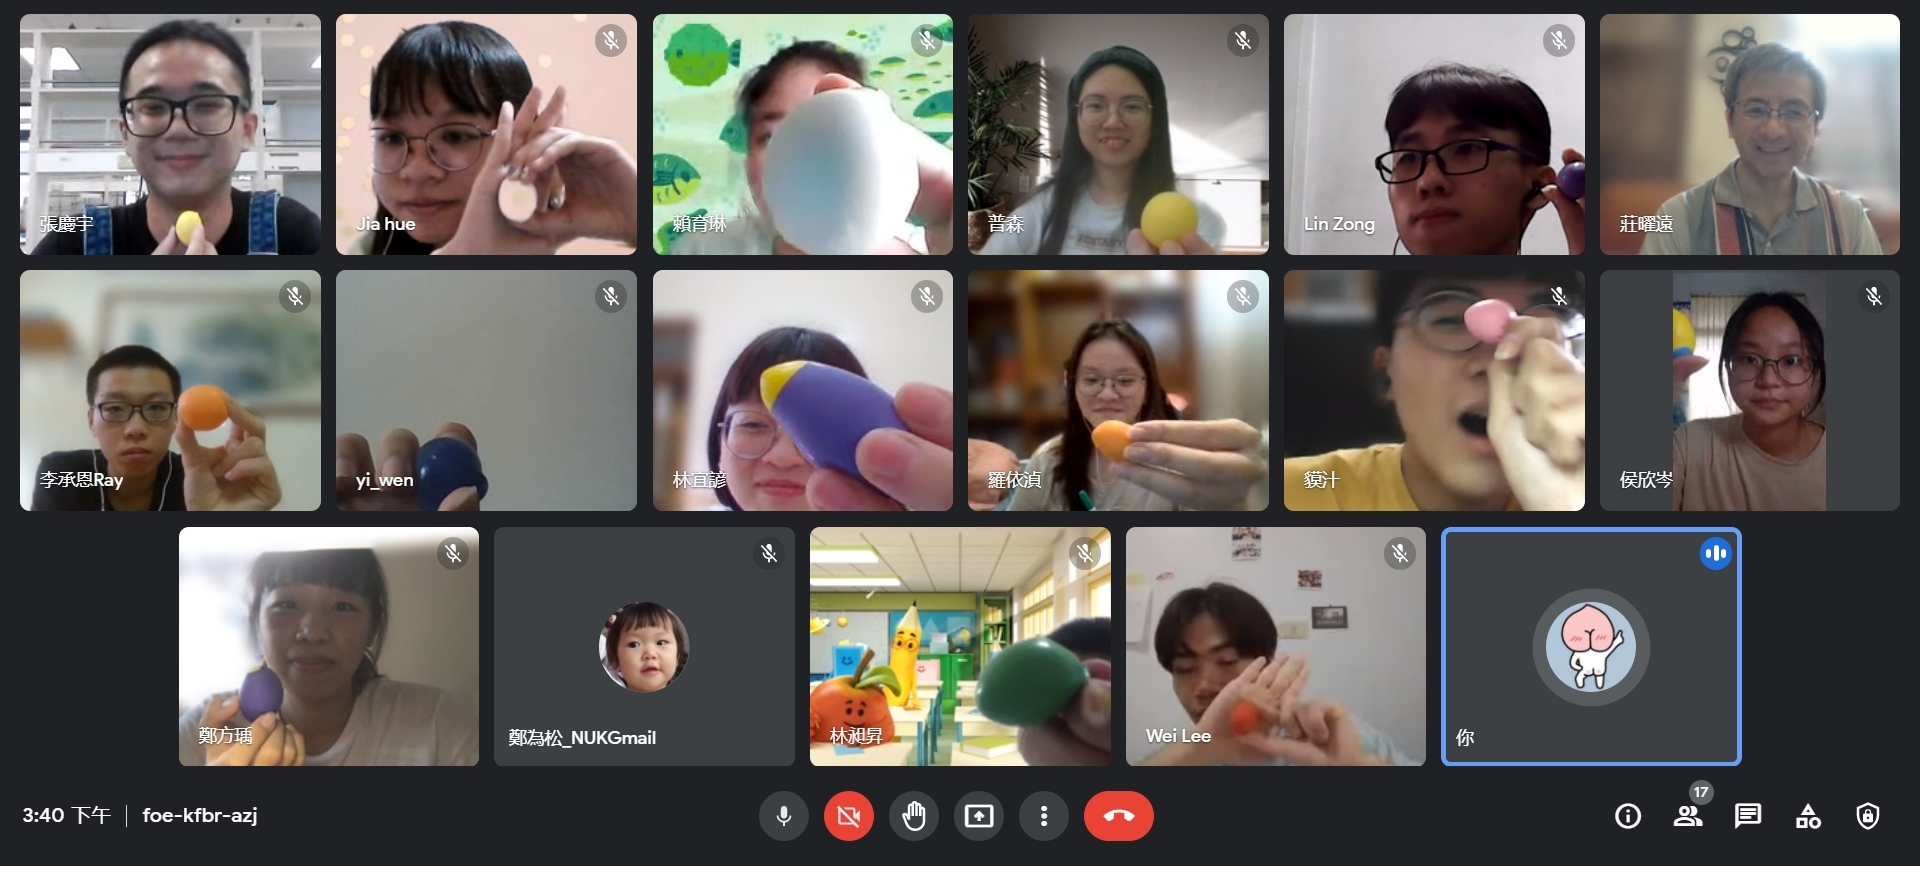 Anak-anak penduduk baru peserta kegiatan sedang menunjukkan hasil pembelajaran mereka lewat media online. (Sumber: foto diambil dari situs resmi National University of Kaohsiung)